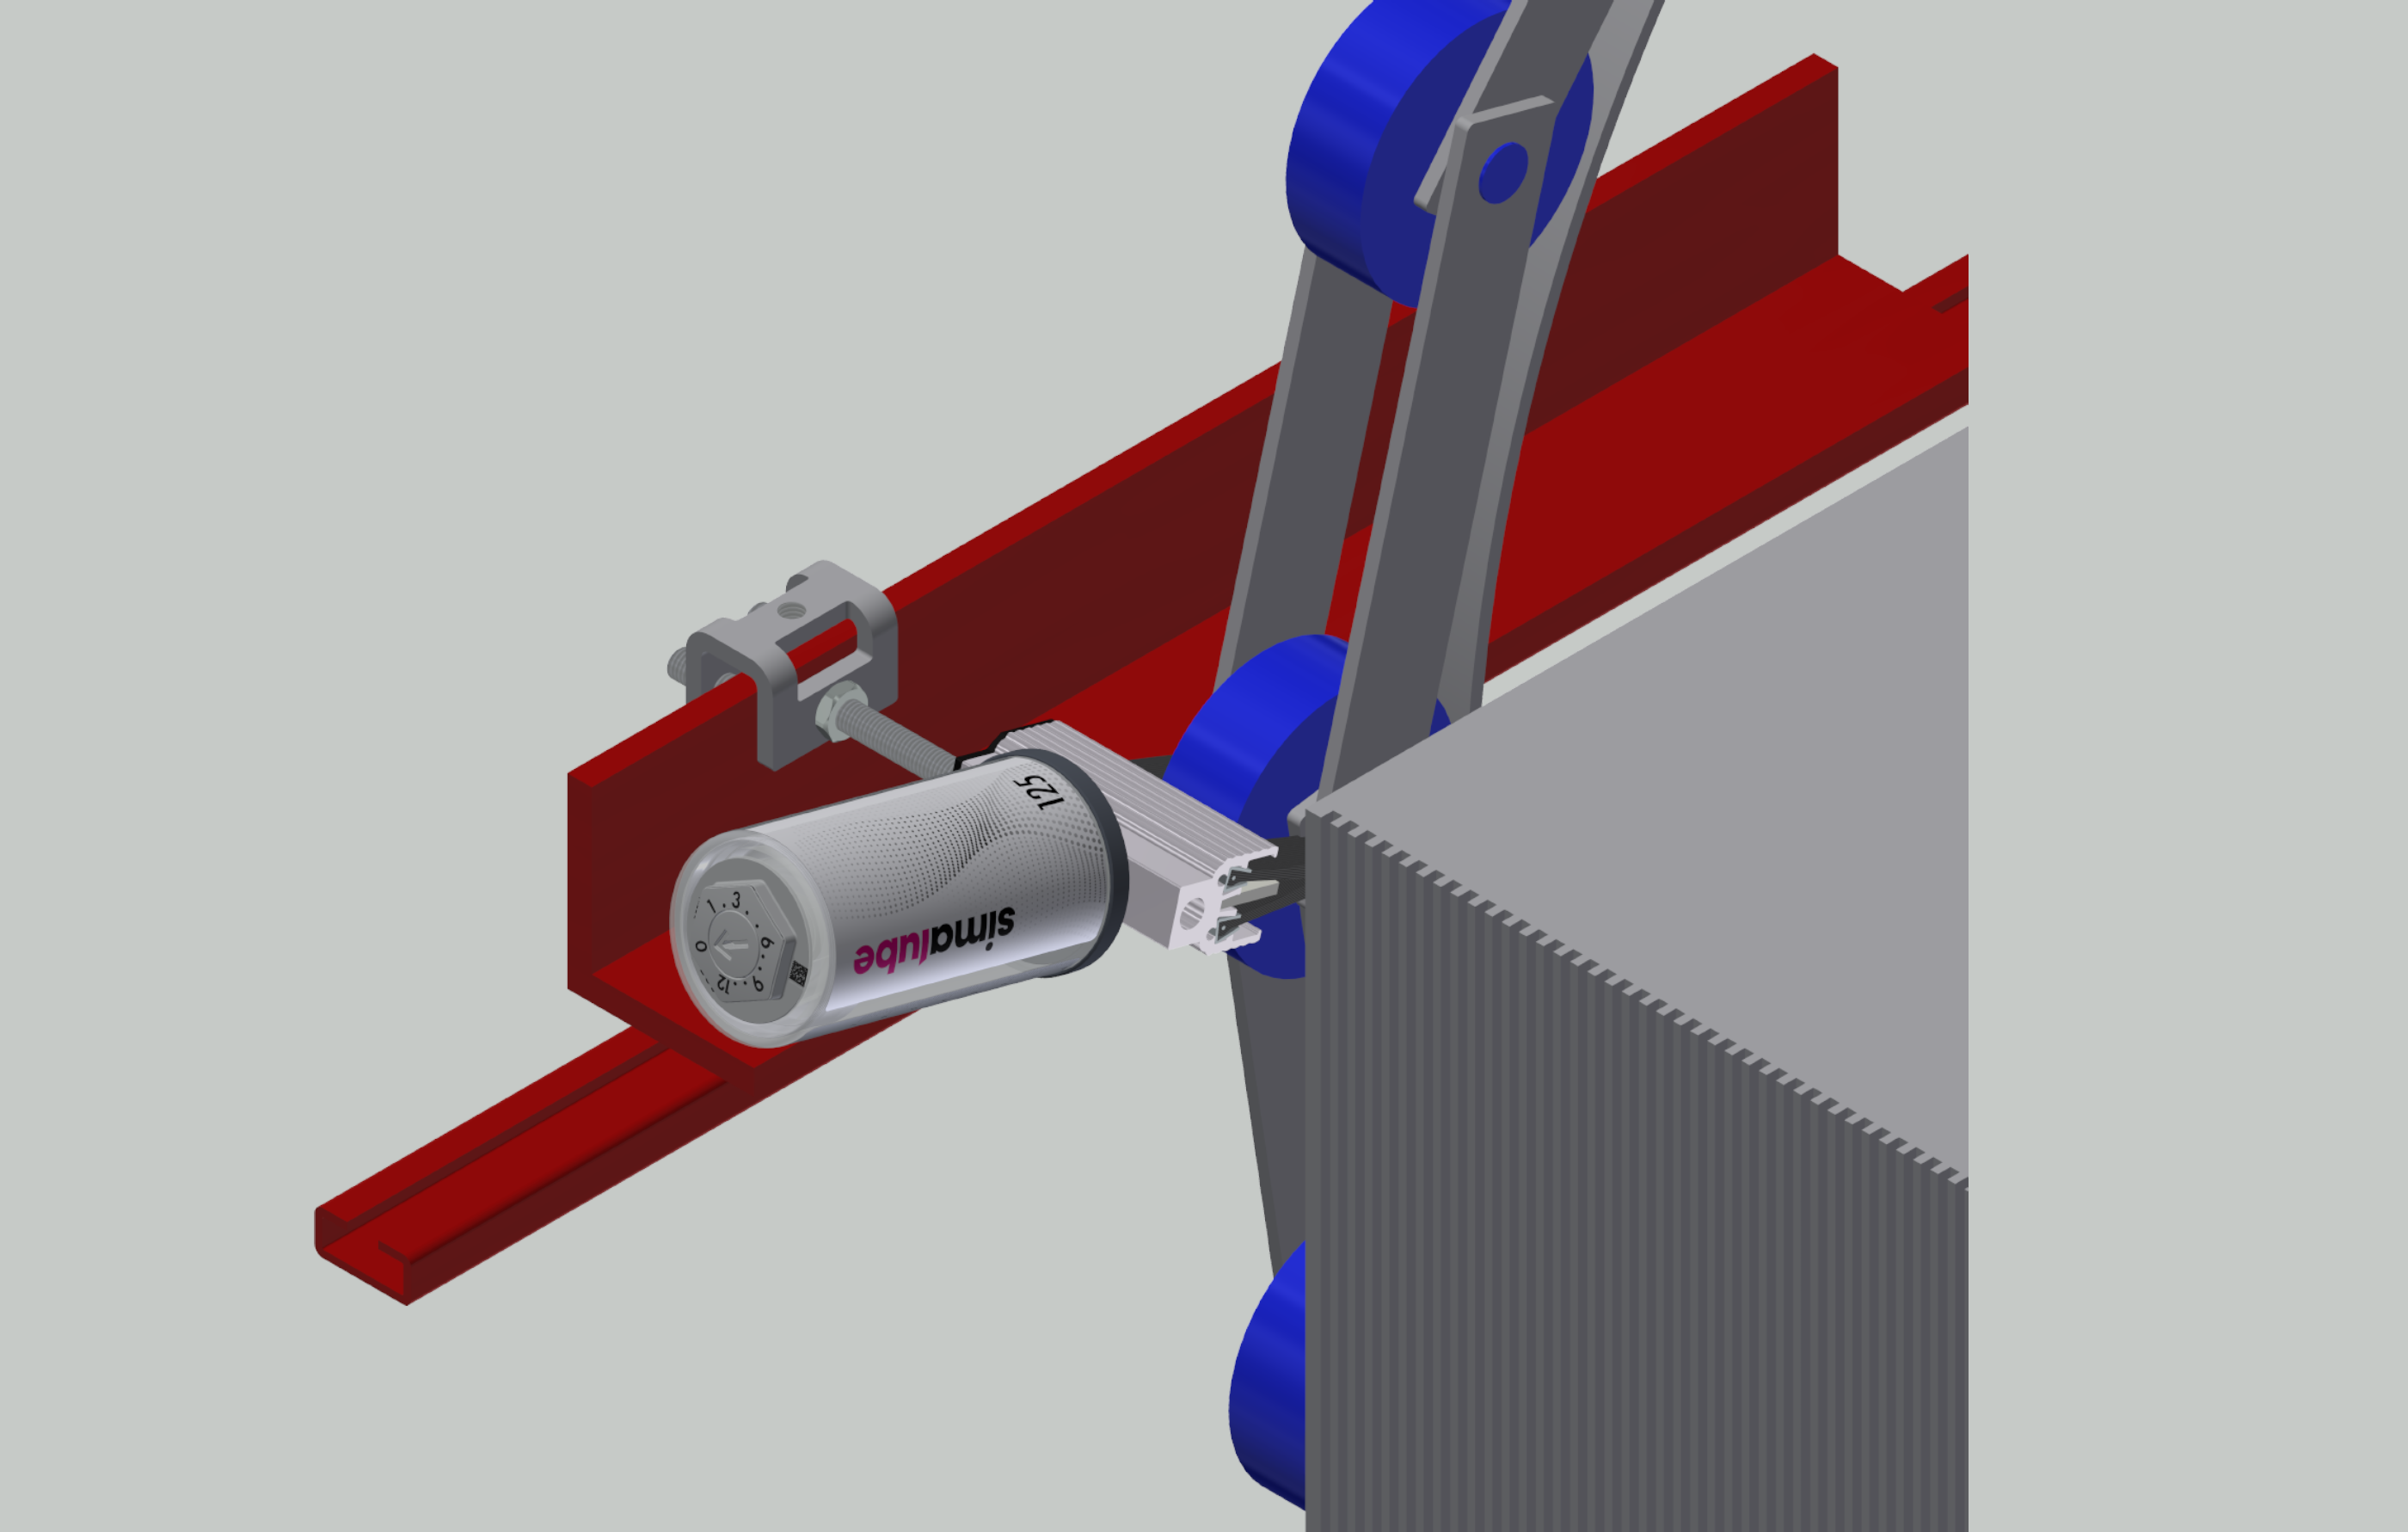 Vista del modelo: el lubricador simalube incl. cepillo lubrica y limpia la cadena de peldaños de una escalera mecánica de forma automática y constante durante un máximo de un año.